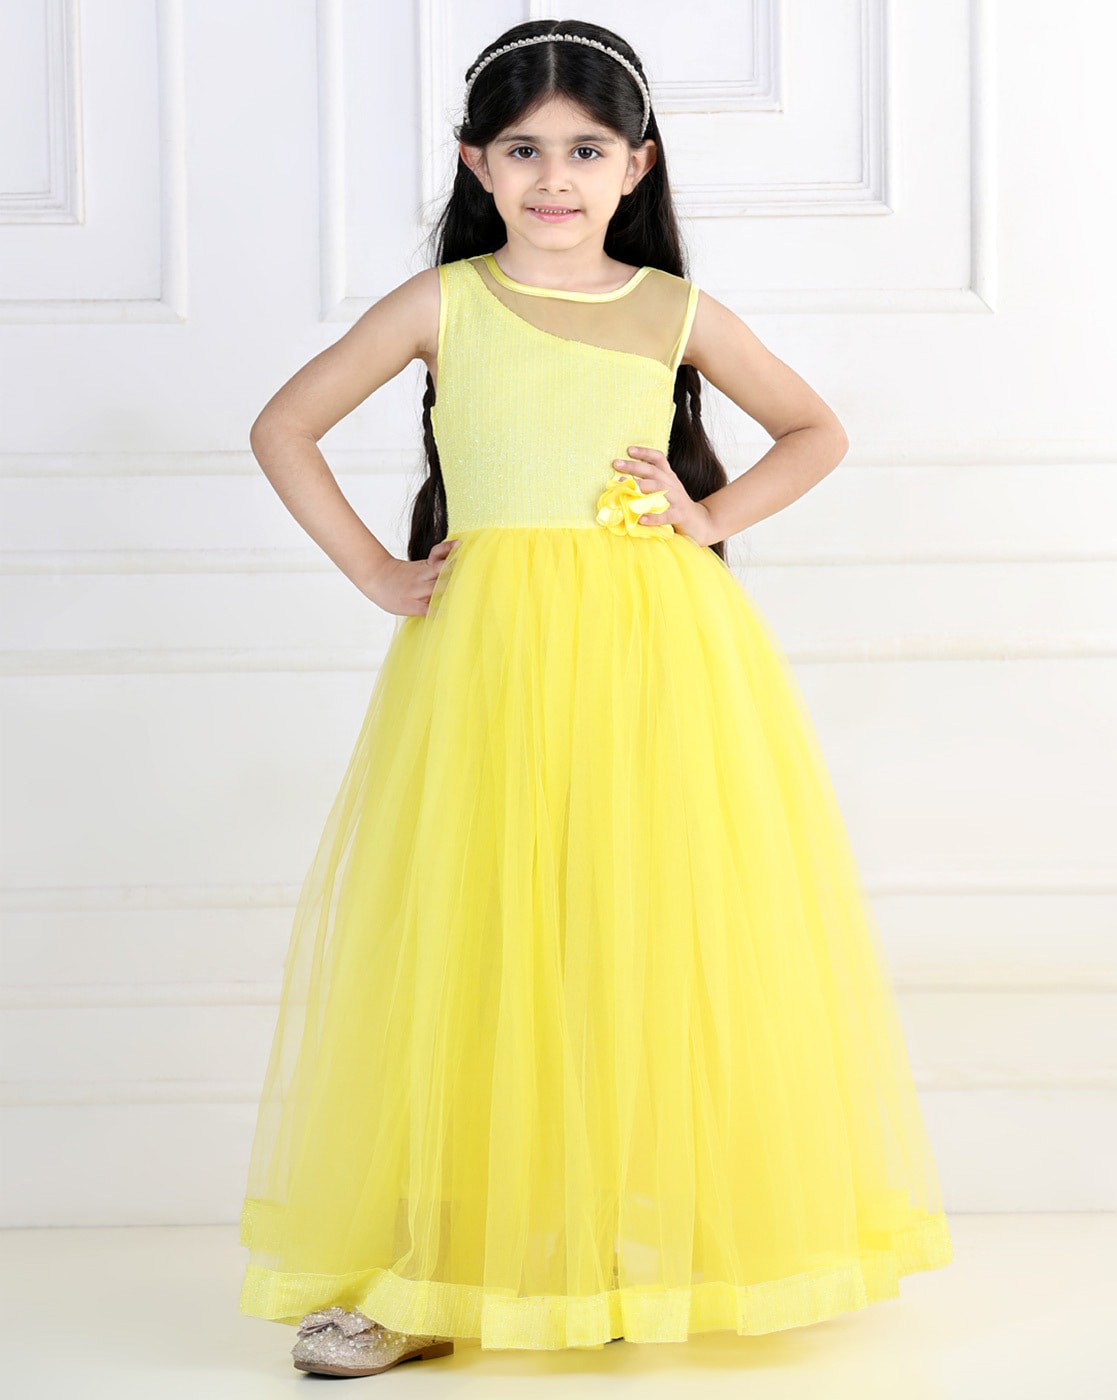 BELLE Dress, Rose Satin Belle Costume, Princess Dress, Yellow Dress, Girls  Princess Dress, Party Dress, Flower Girl Dress - Etsy